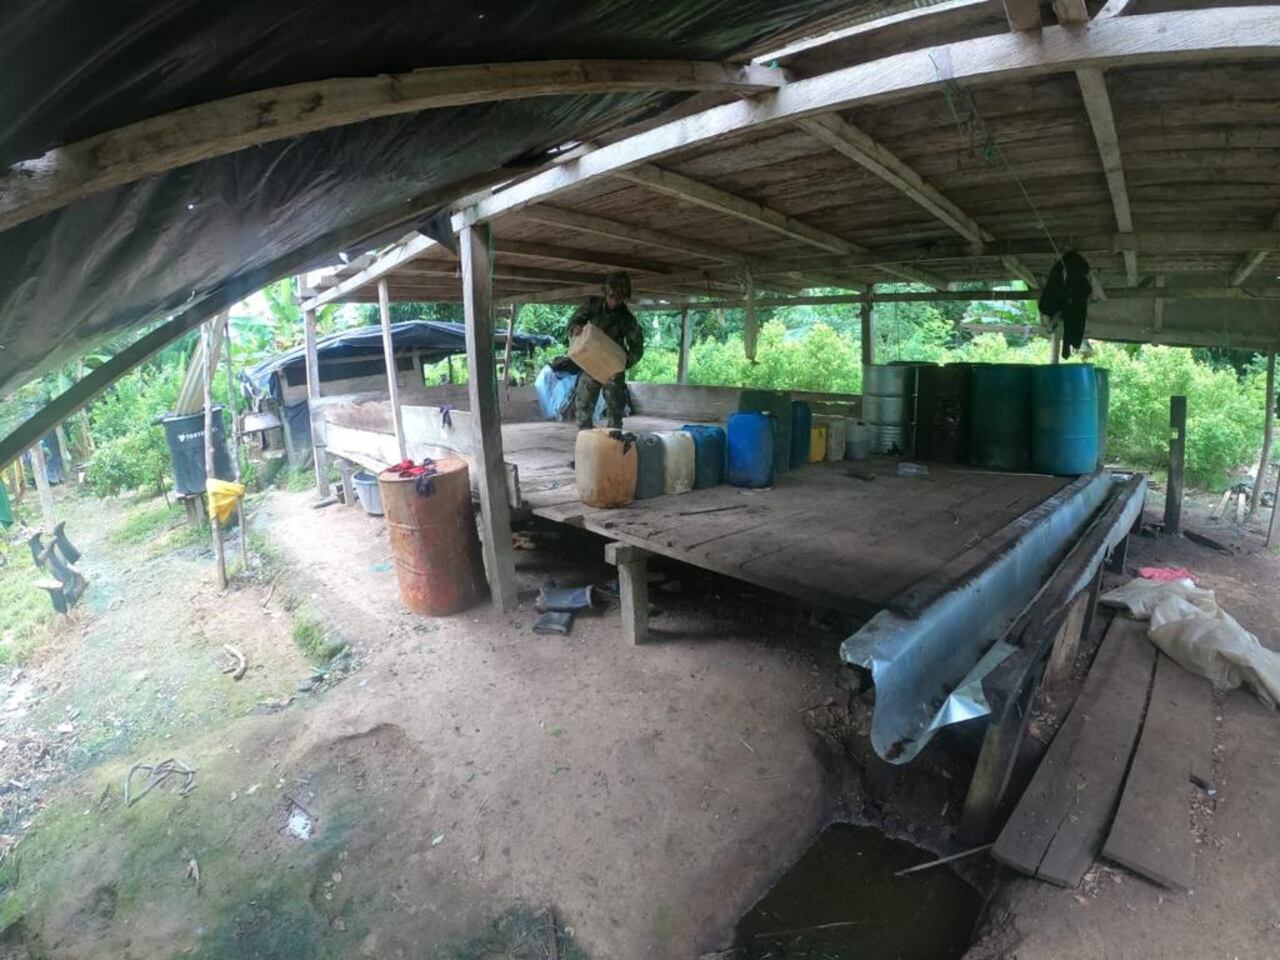 En operativos conjuntos, autoridades lograron destruir 5 laboratorios ilícitos en Chocó y 3 en Antioquia.